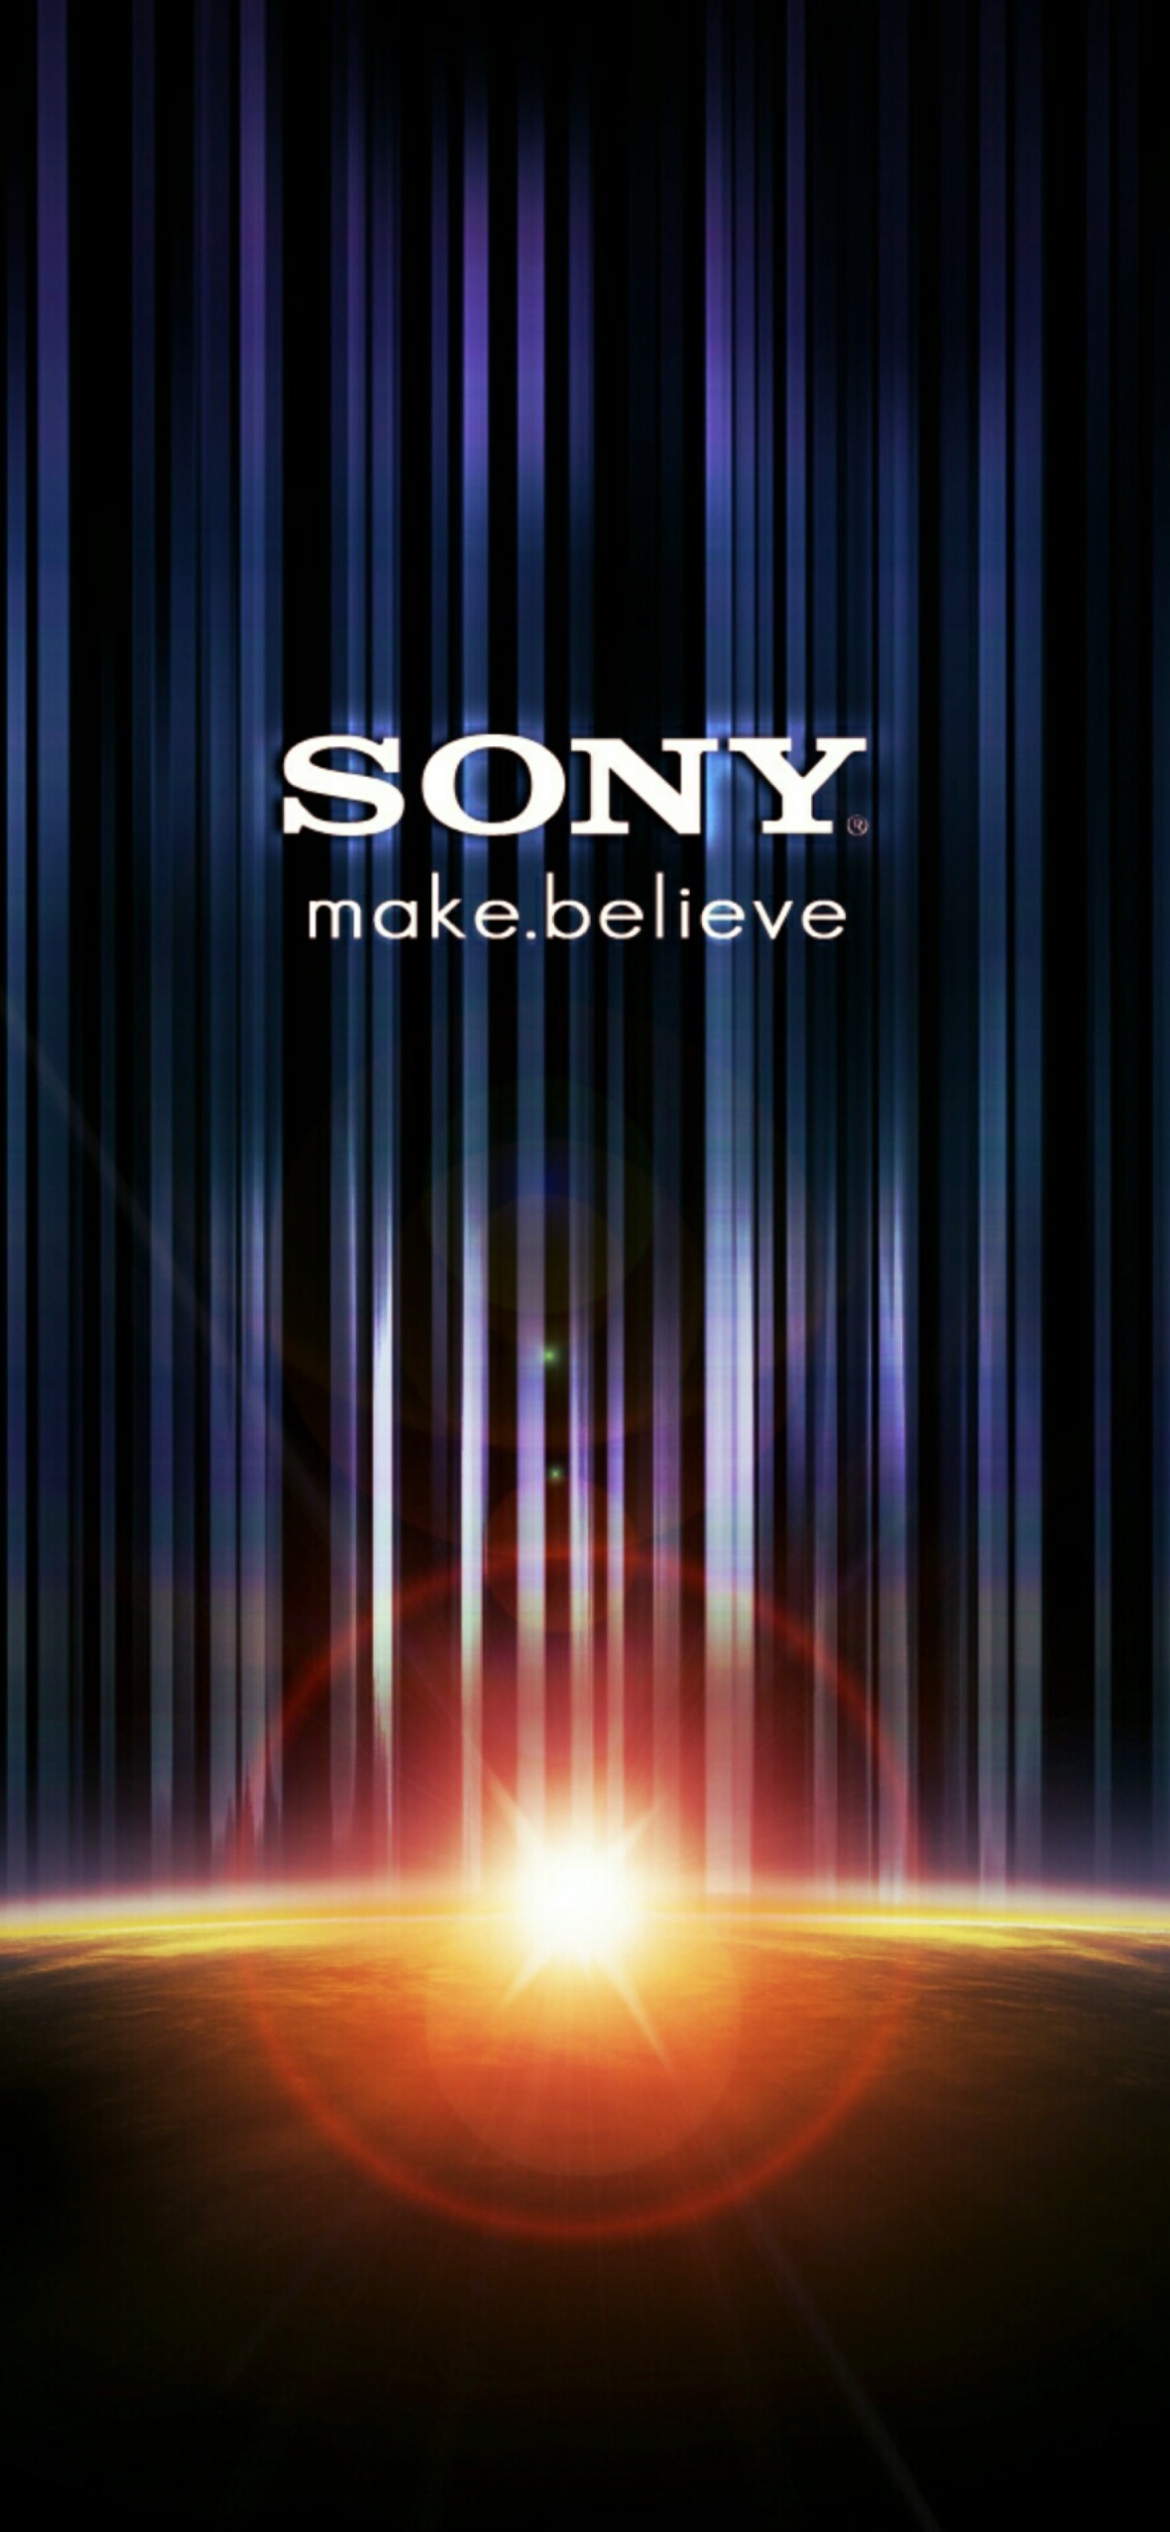 Sony Make Believe wallpaper 1170x2532